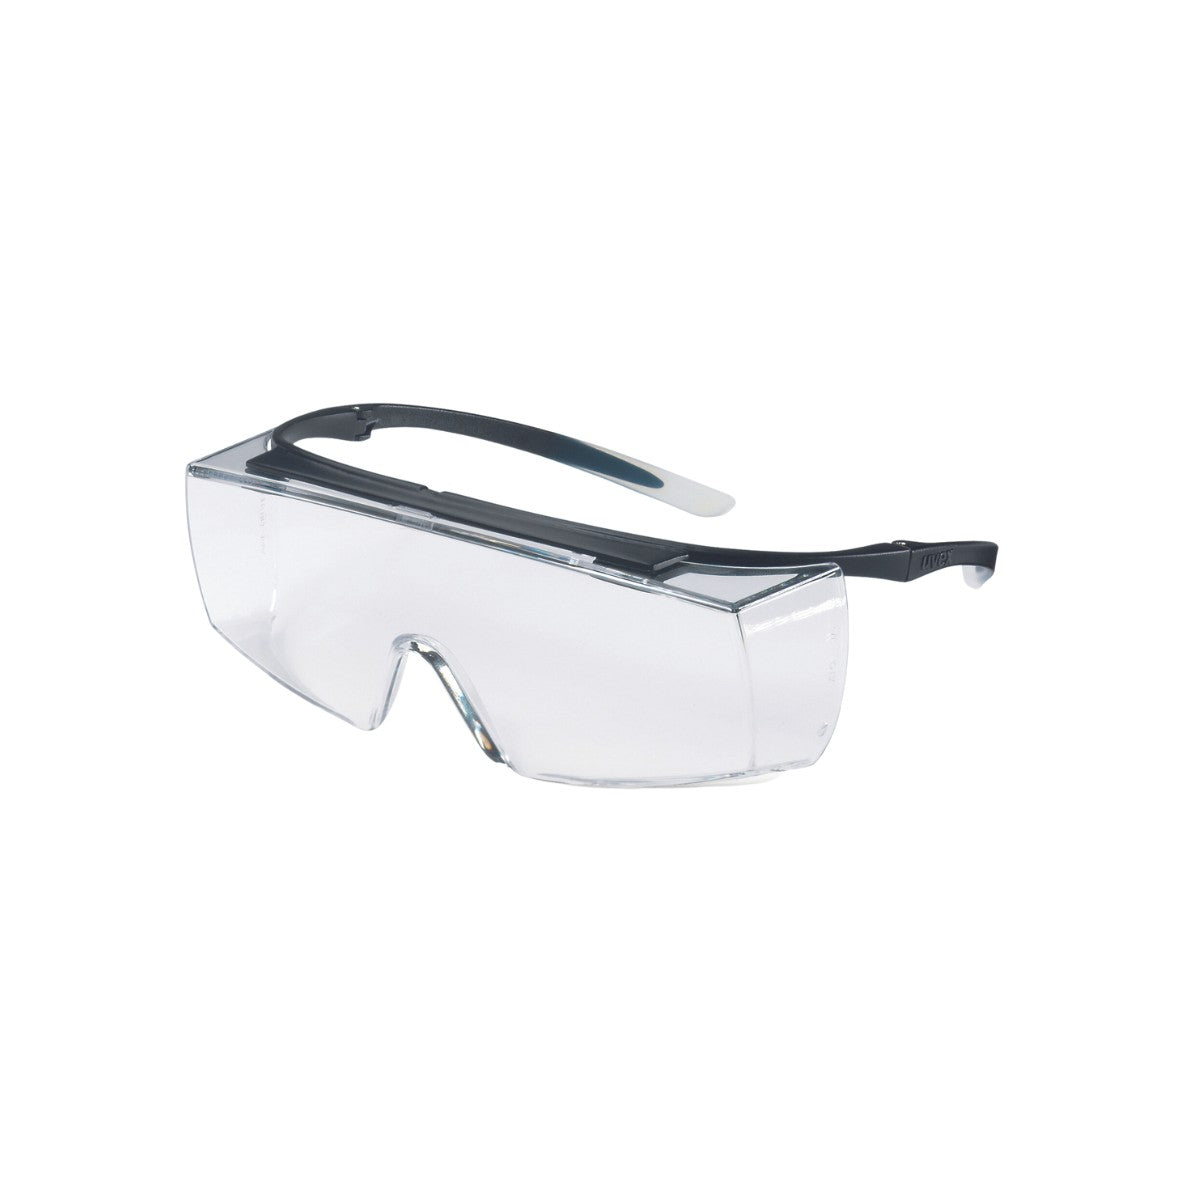 uvex Super OTG Safety Glasses - Clear Lens 9169-945 (Pack of 10)